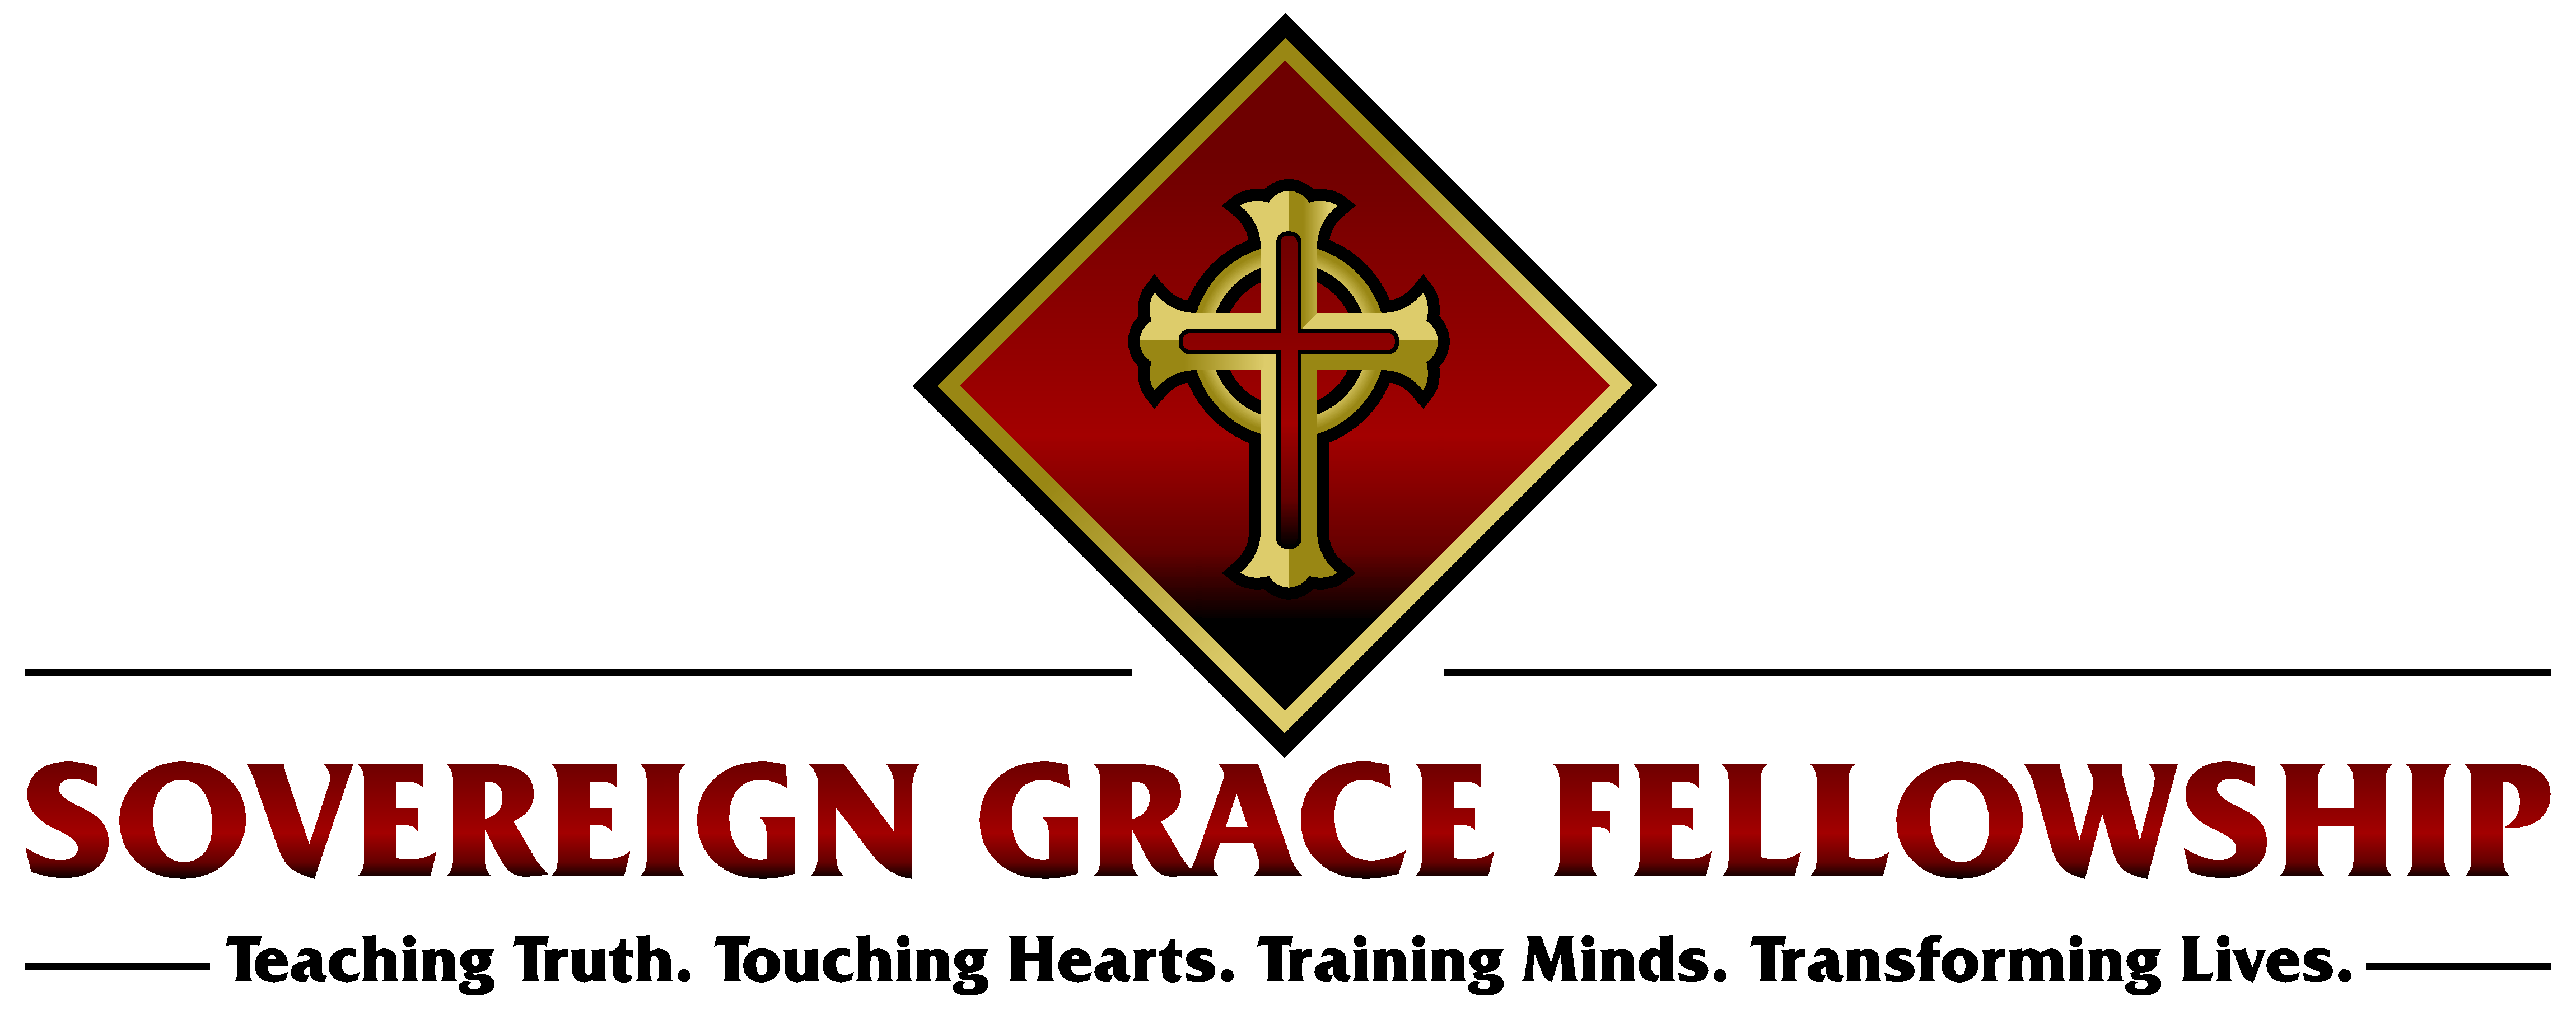 Sovereign Grace Fellowship